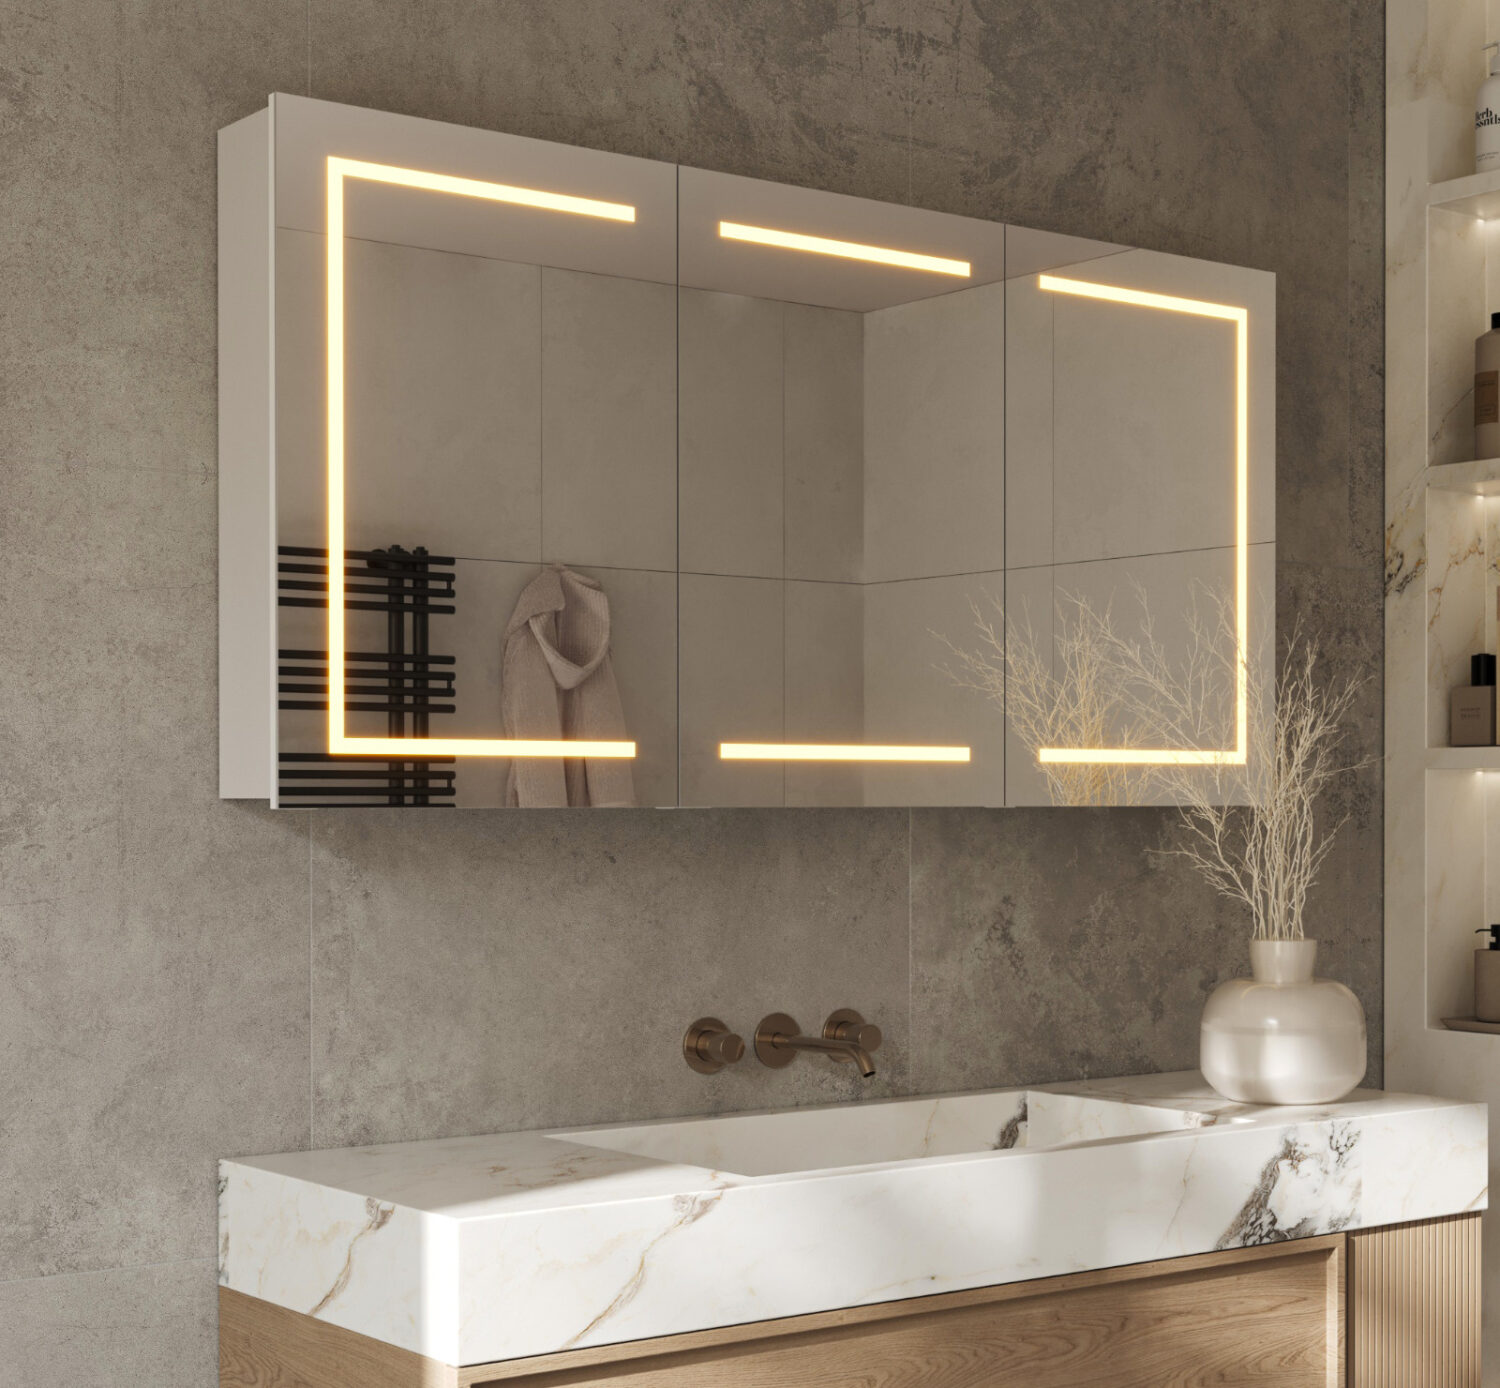 Luxe aluminium badkamerspiegelkast, voorzien van alle gemakken, zoals: verlichting, spiegelverwarming, 2 stopcontacten met USB en sensor bediening